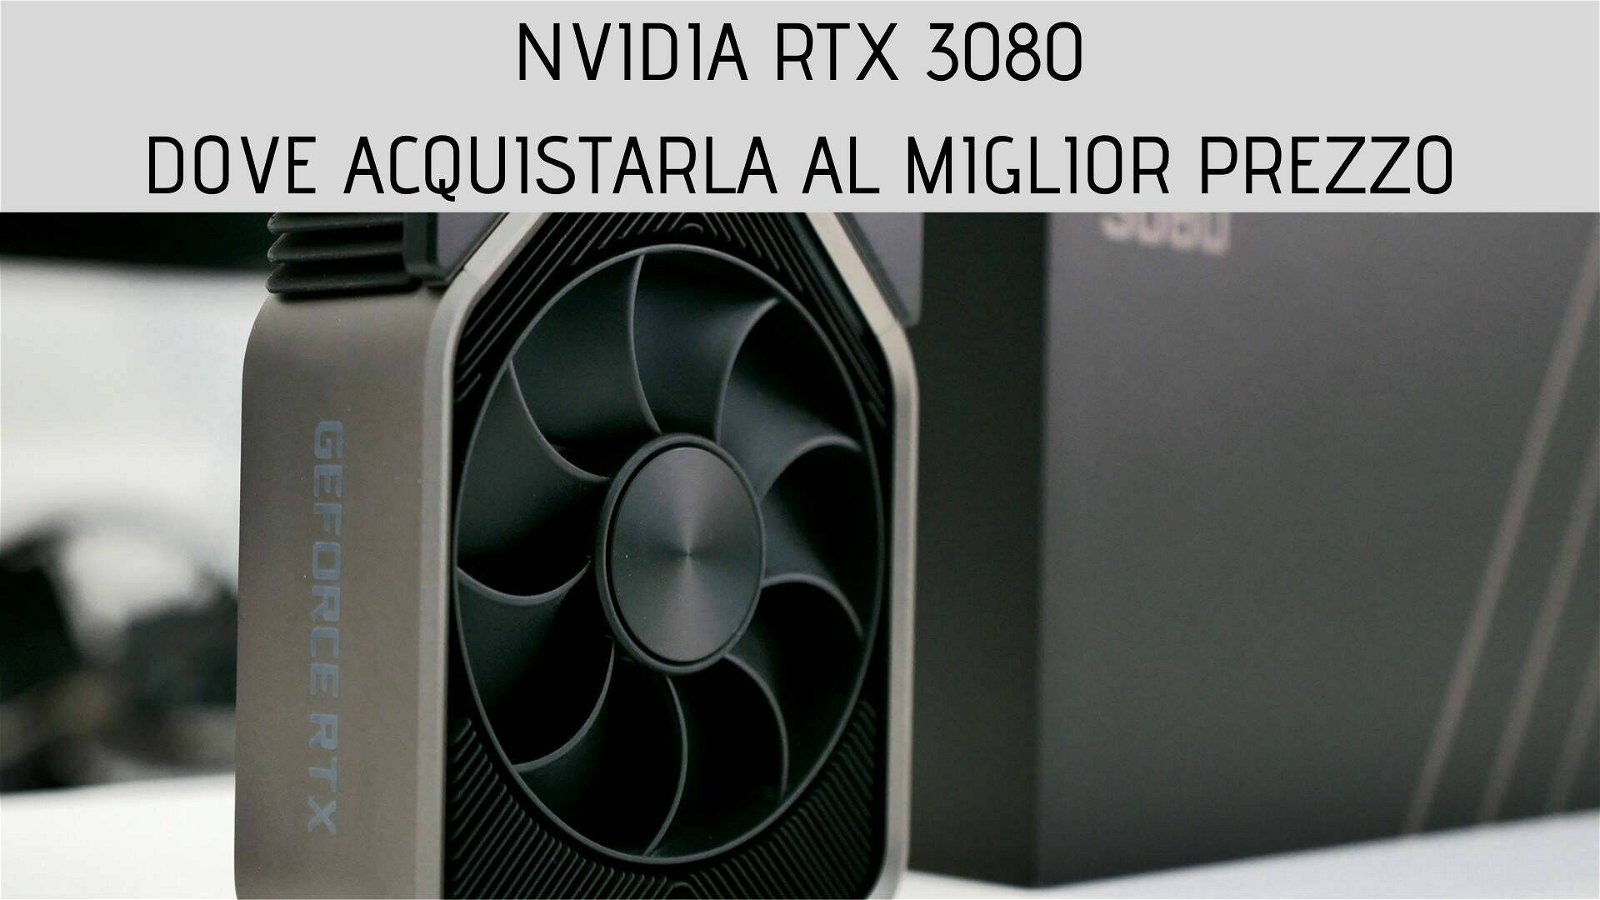 Immagine di Nvidia RTX 3080: ecco dove acquistarla al miglior prezzo